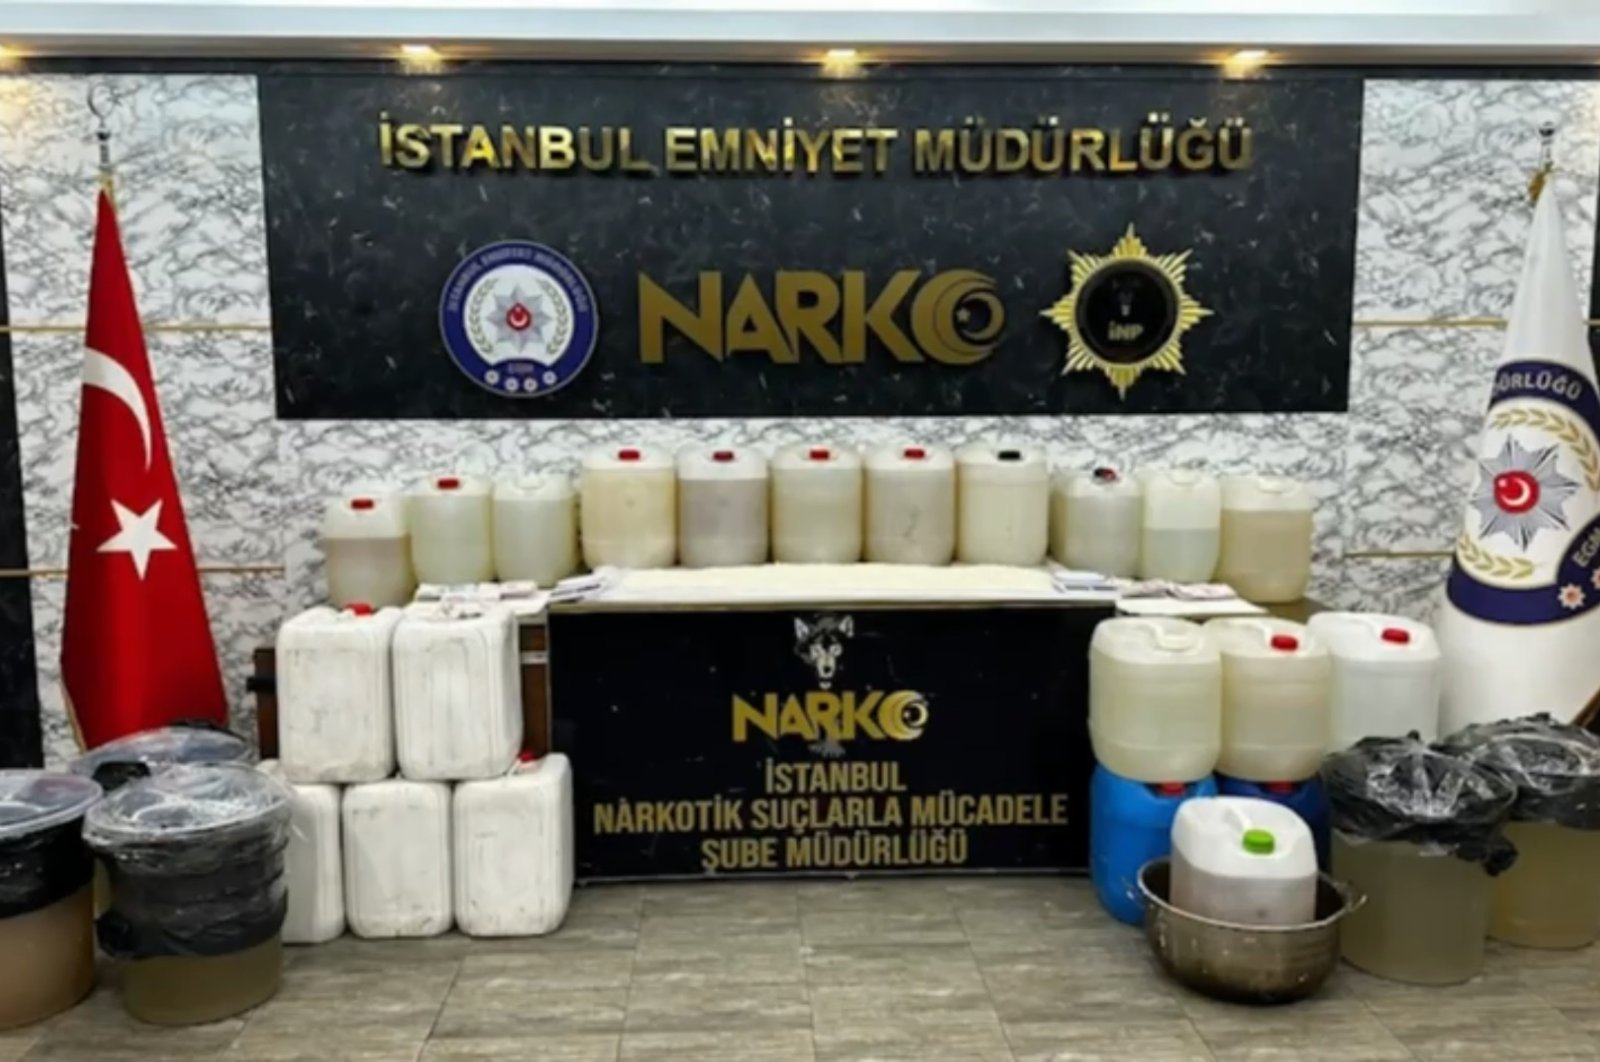 Over 700 kilograms of meth seized in Istanbul